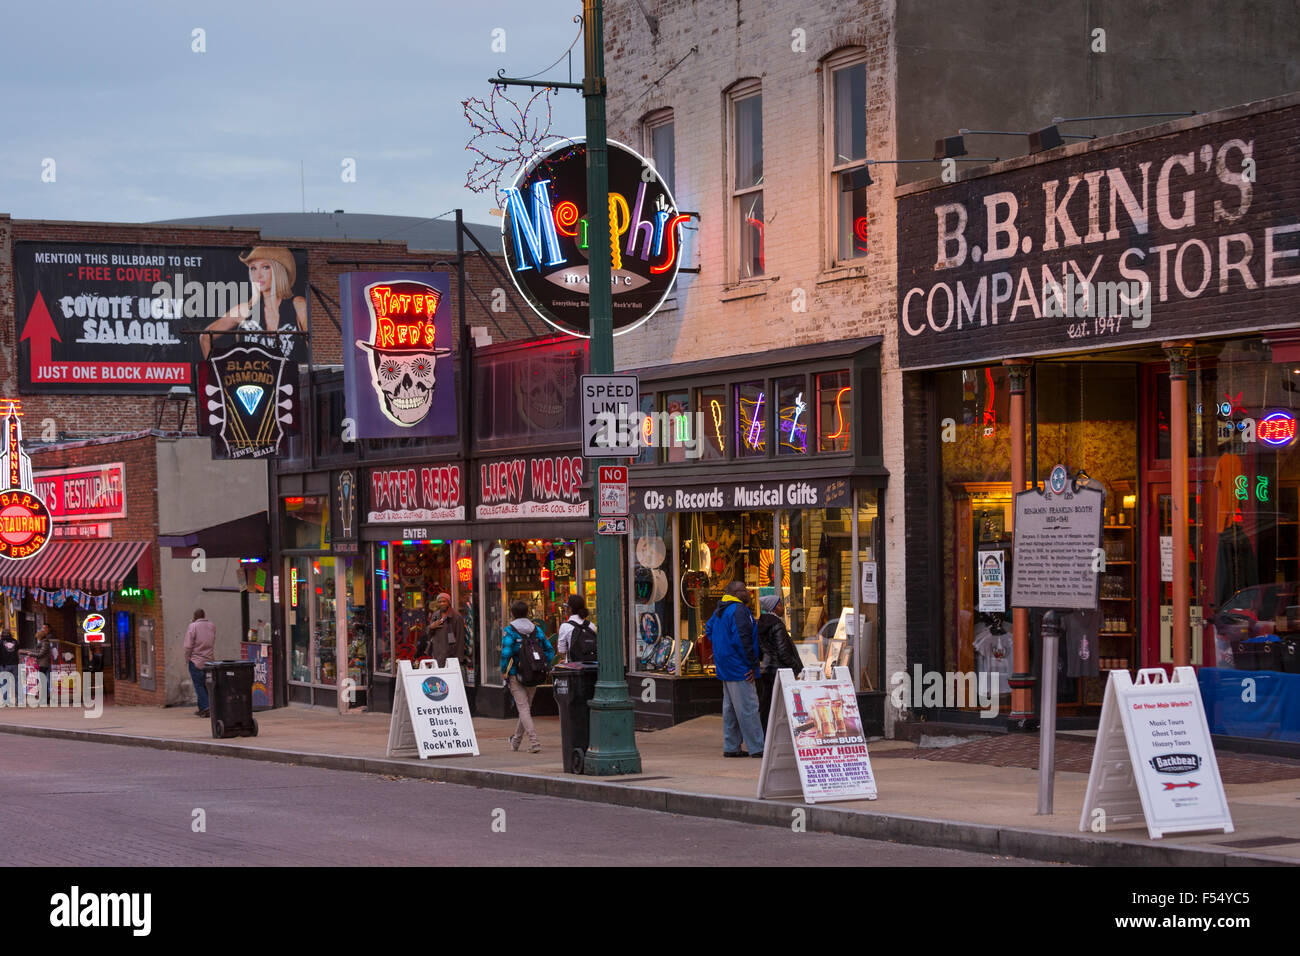 BB King's Company Store e i locali musicali nel leggendario quartiere dei divertimenti di Beale Street di Memphis, Tennessee, Stati Uniti d'America Foto Stock